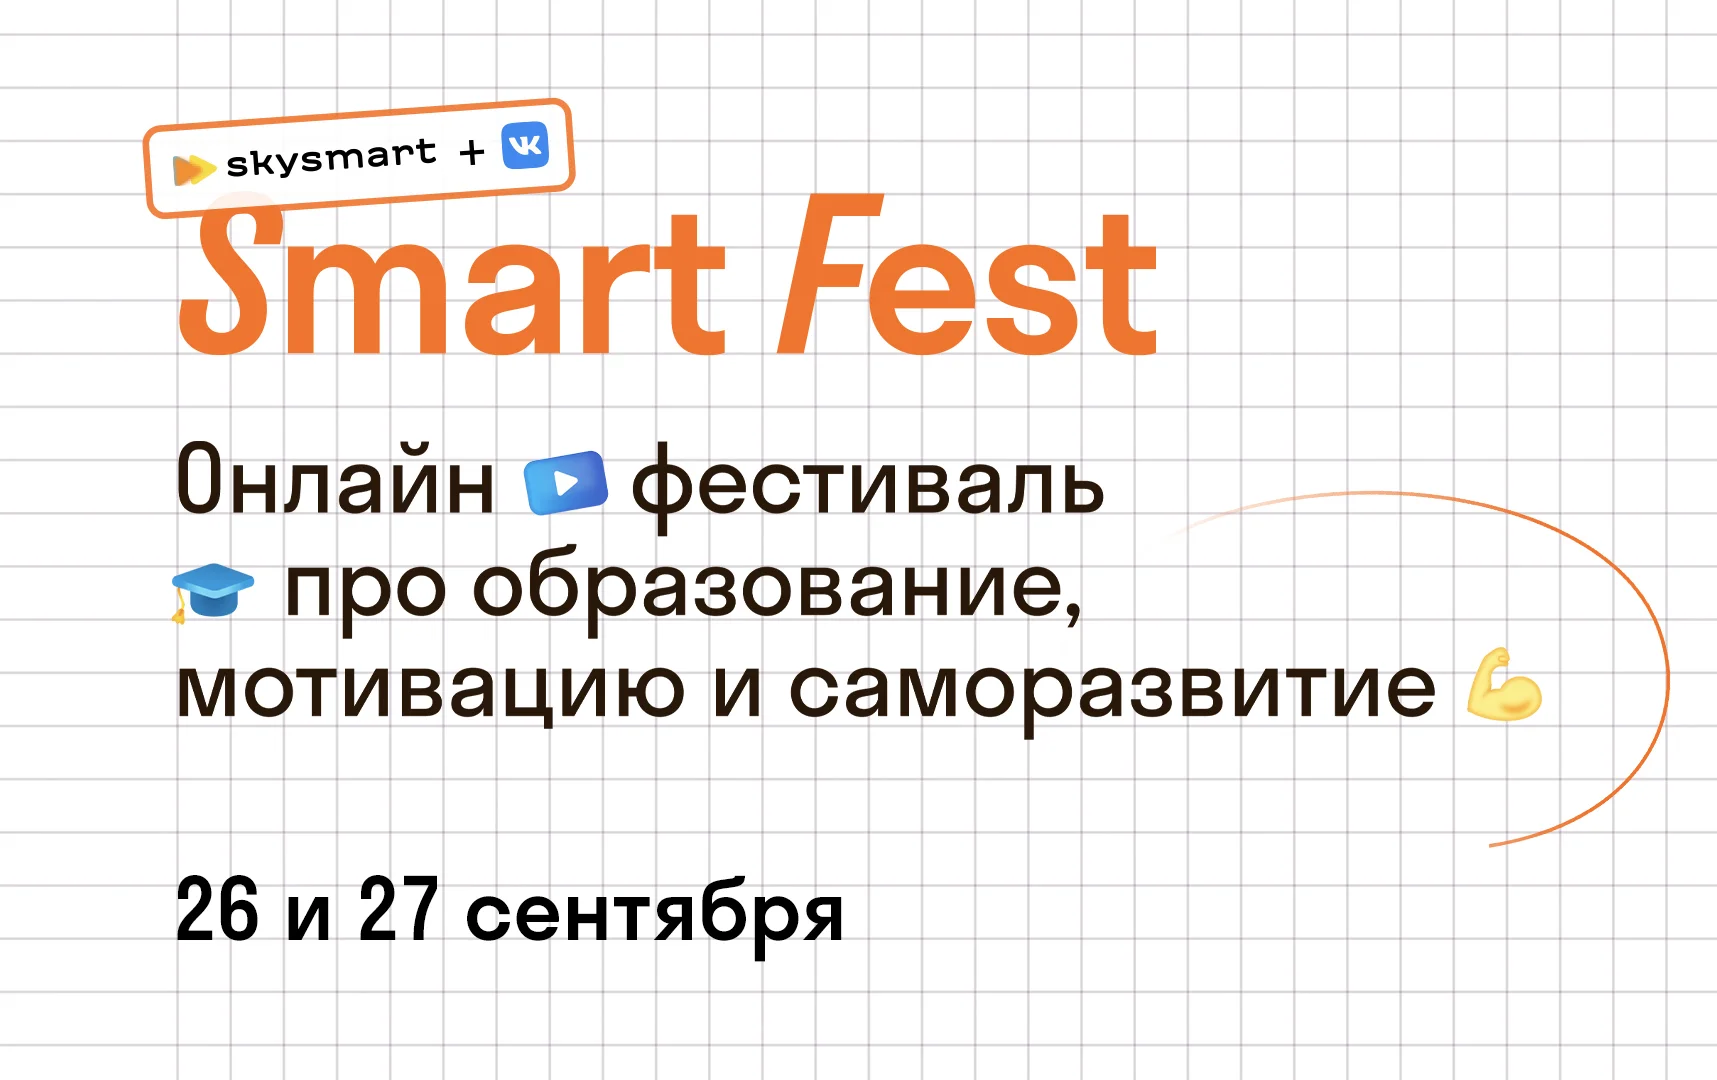 Skysmart и «ВКонтакте» проведут онлайн-фестиваль для школьников и их родителей - фото 1